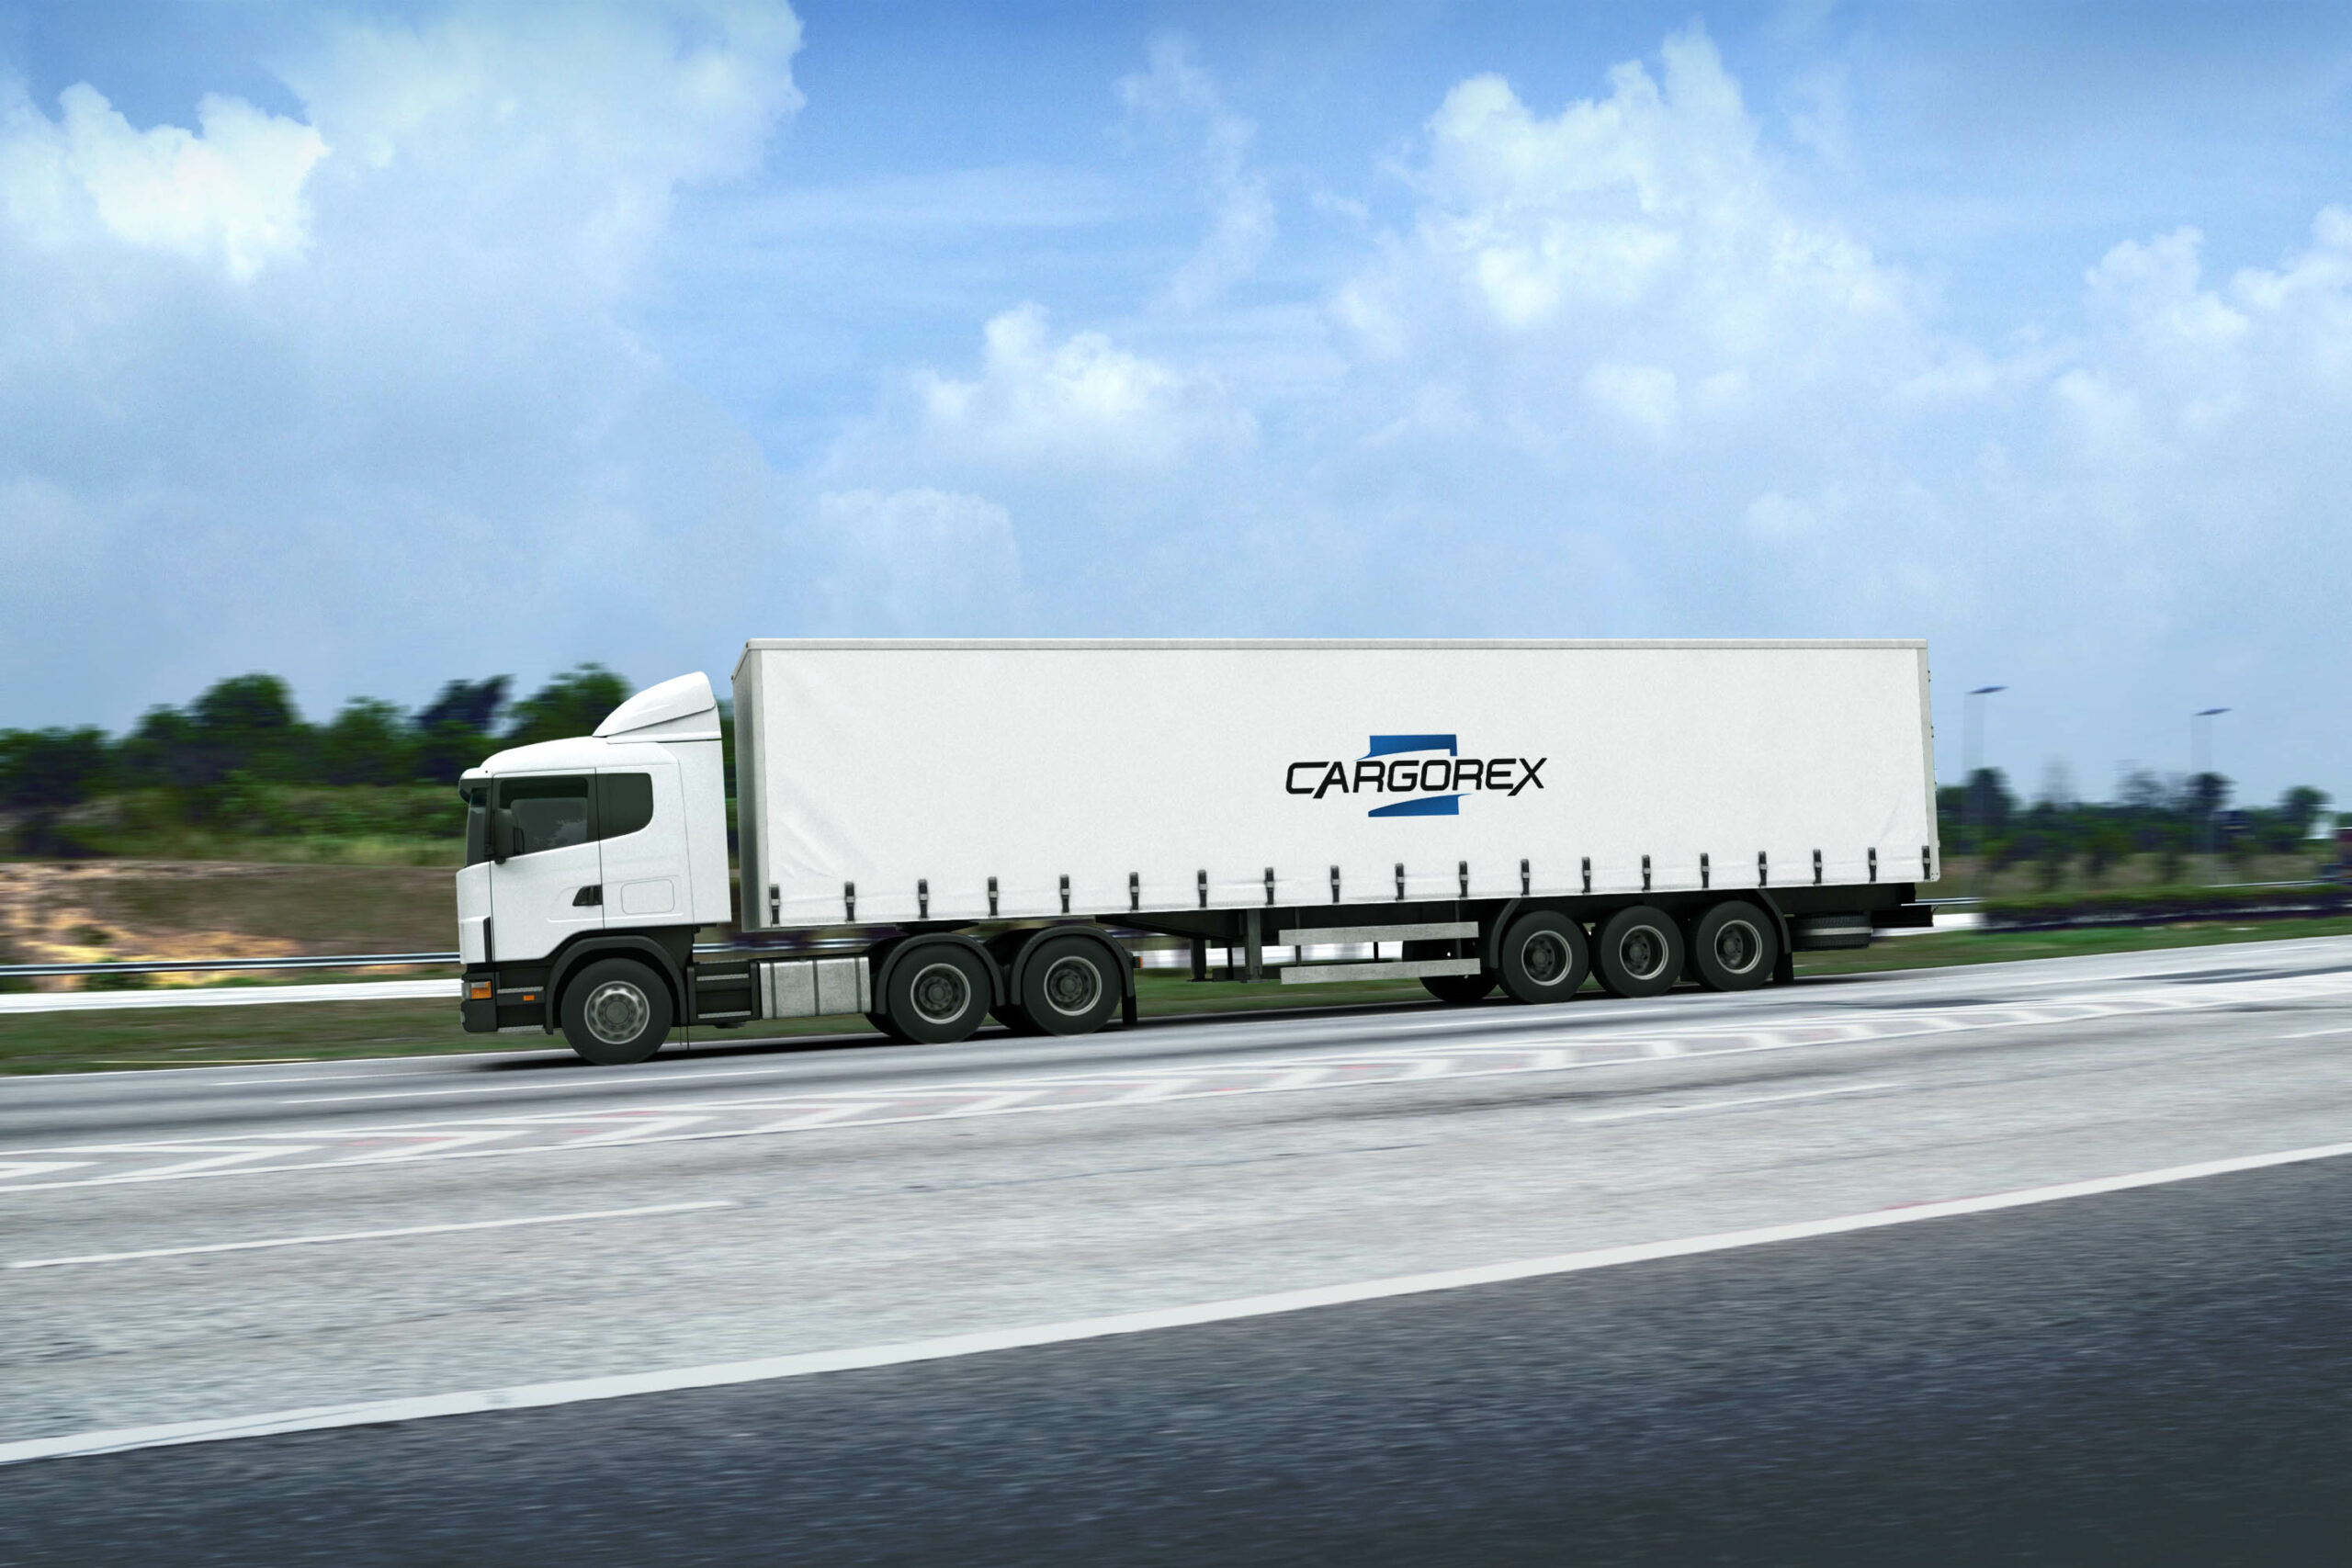 cargorex mockup 5 skaliert - West Sussex Freight Services